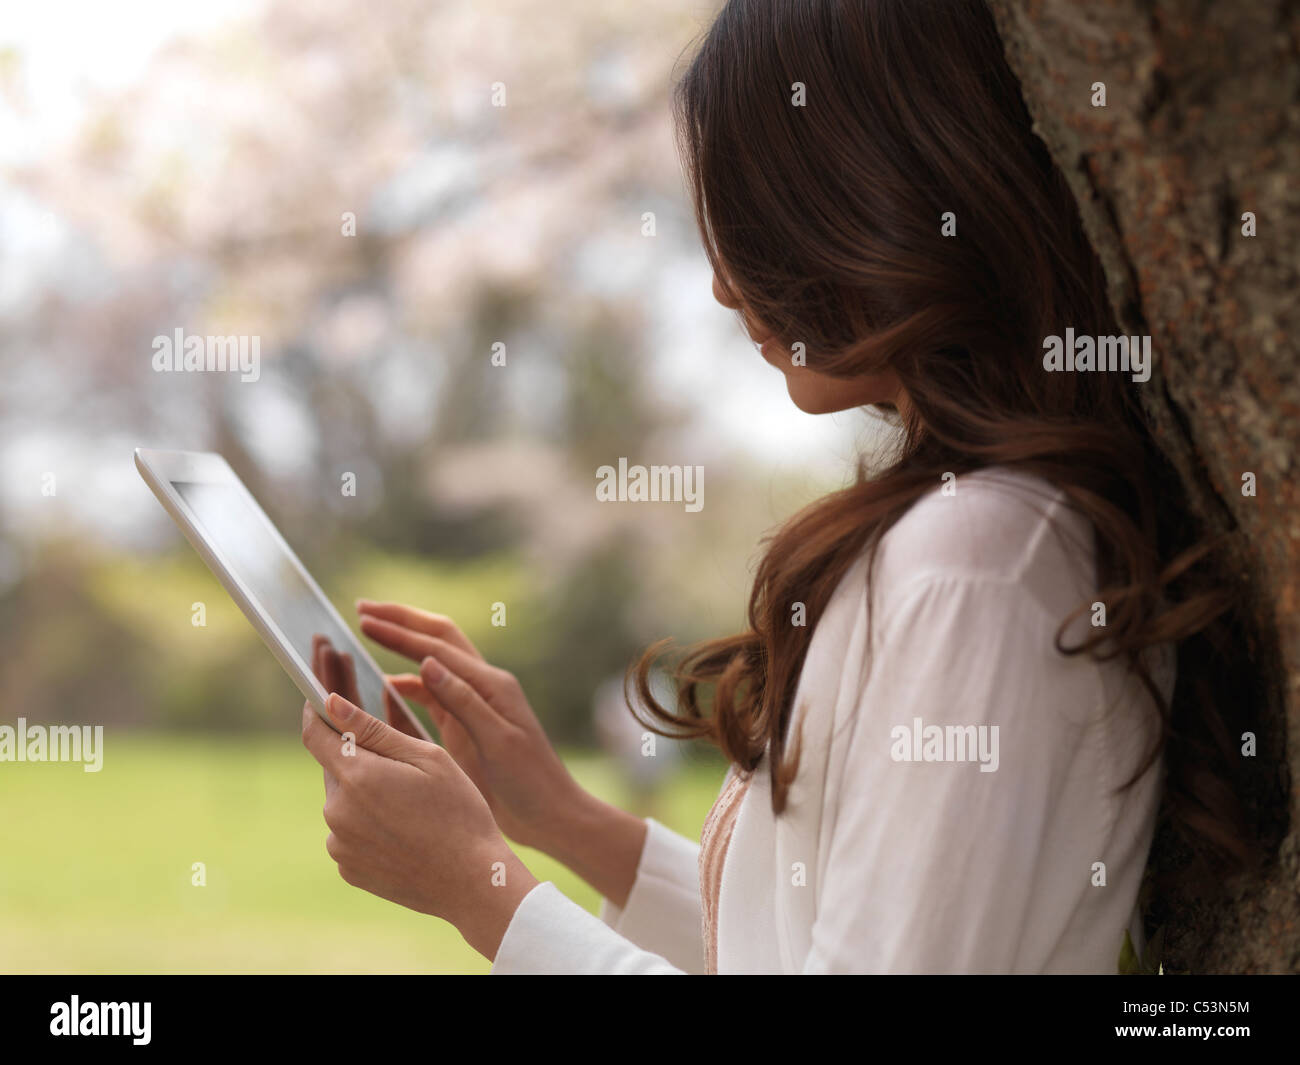 Lizenz erhältlich unter MaximImages.com - Young Woman mit iPad Tablet-Computer in einem Park unter einem Kirschbaum Stockfoto